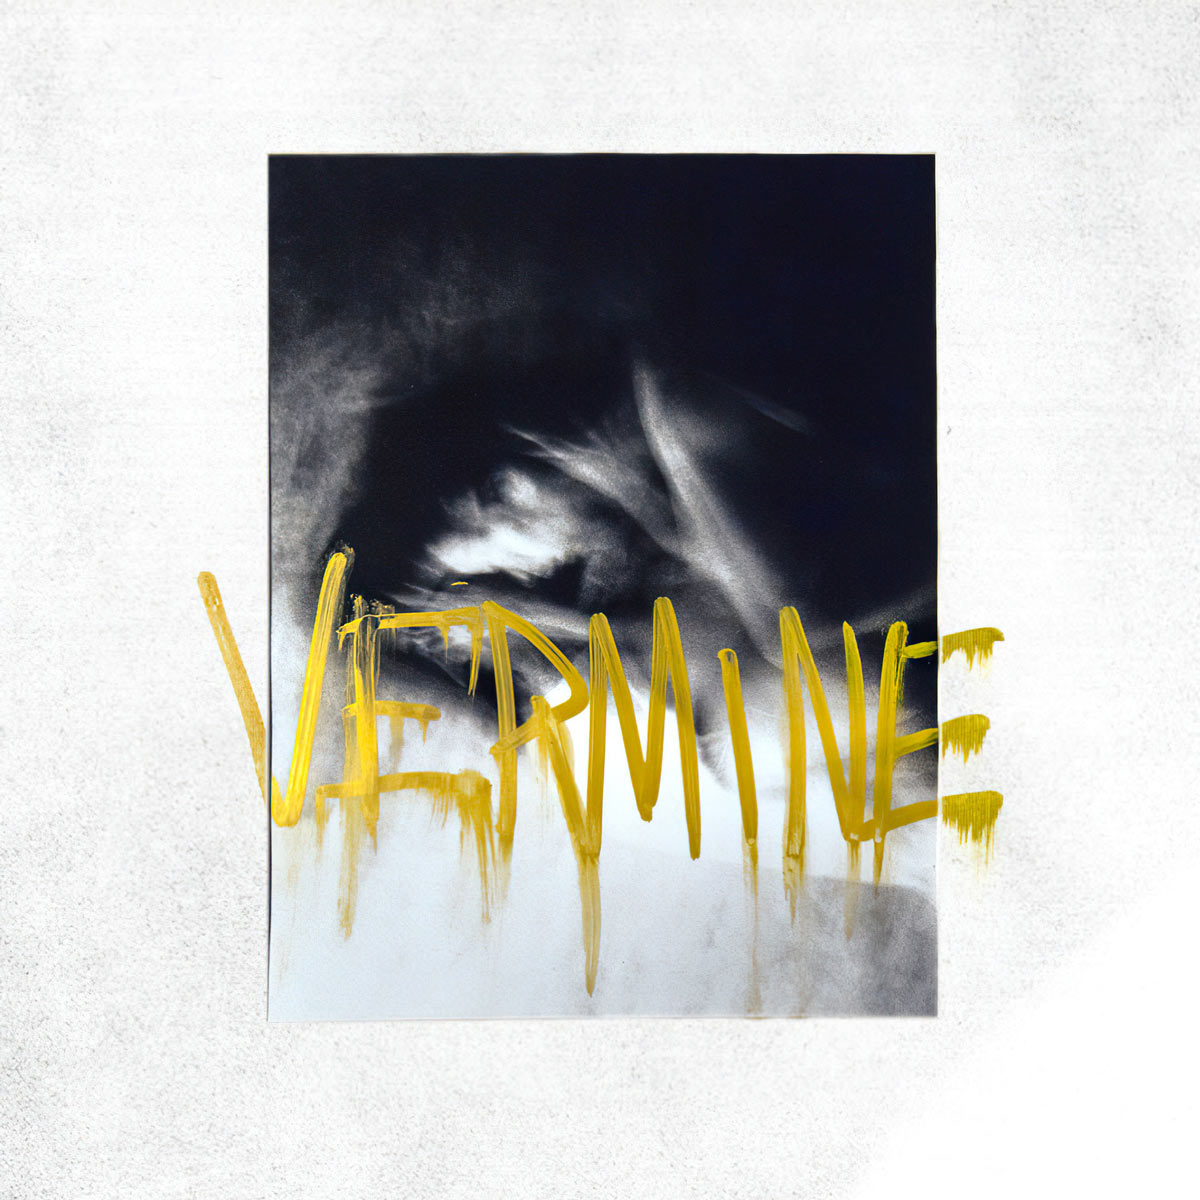 Vermine, s/t, Digital Album Cover